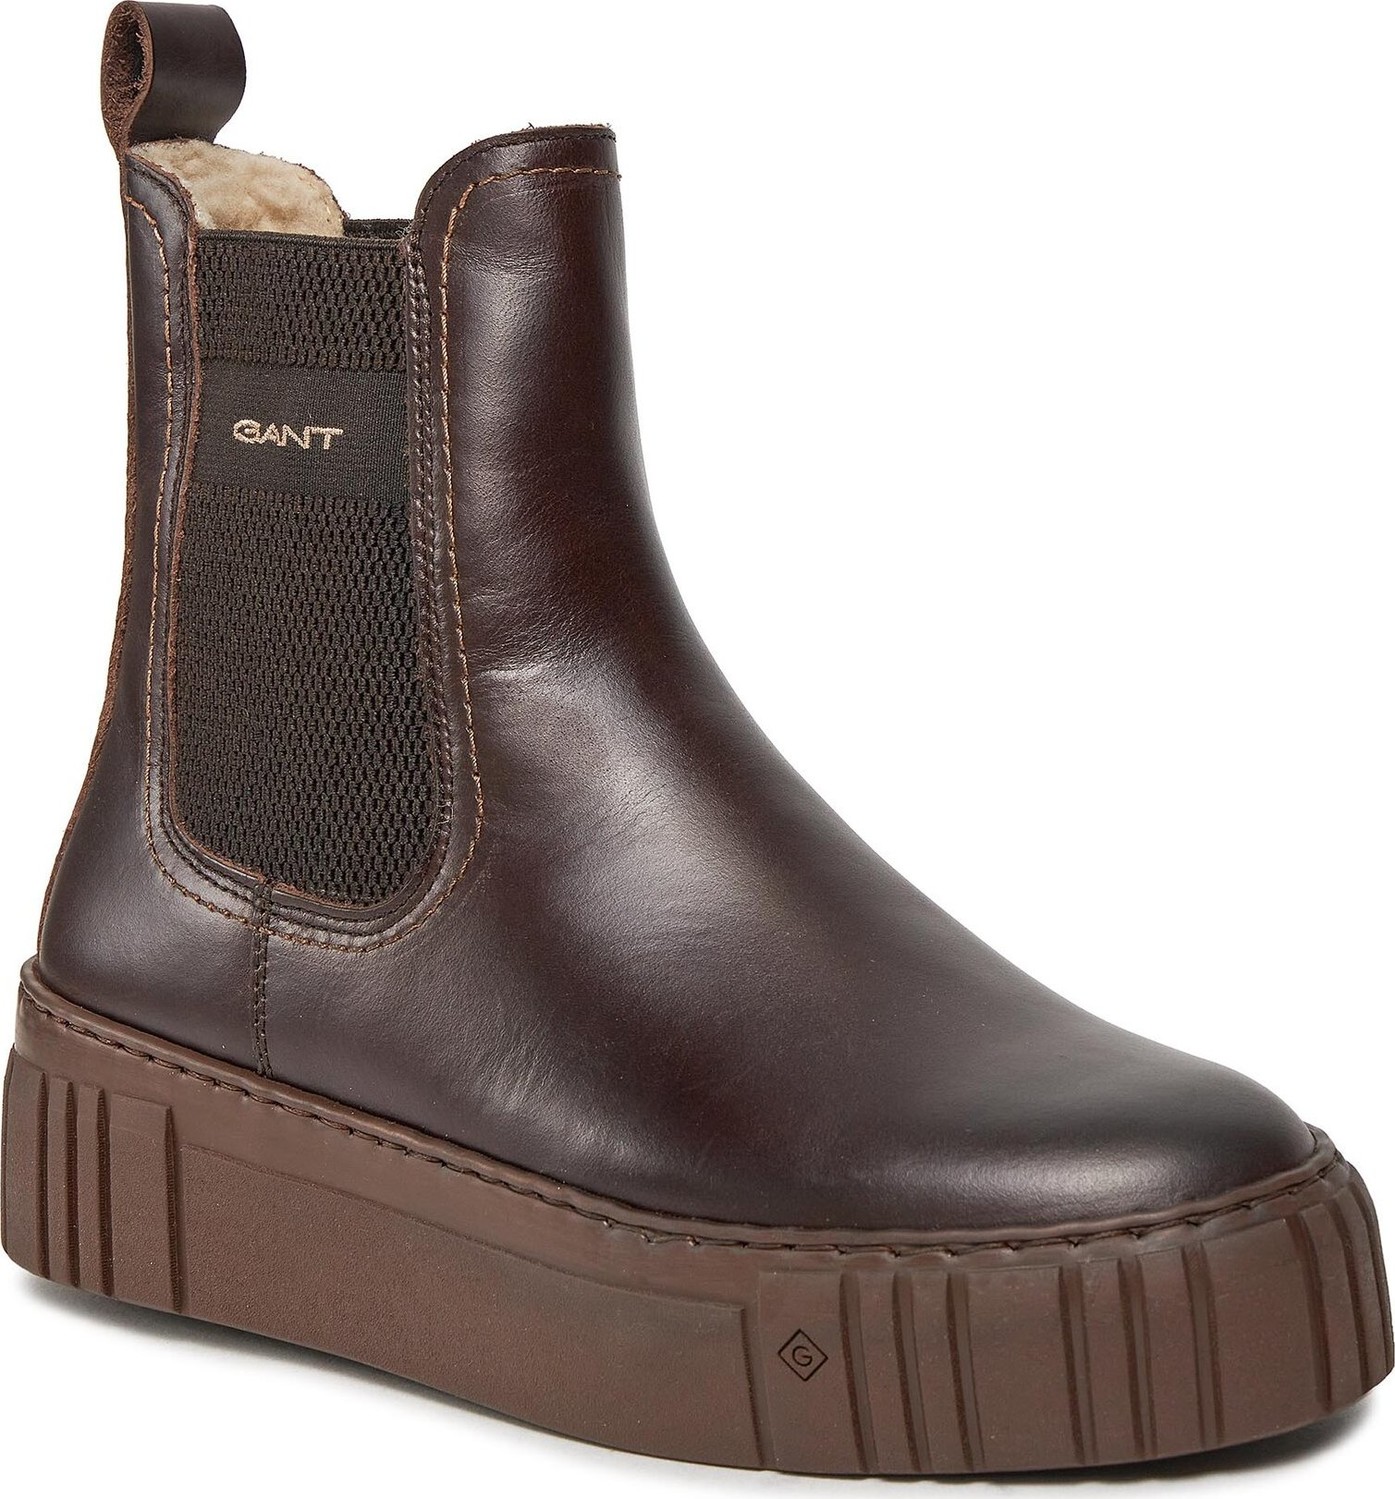 Kotníková obuv s elastickým prvkem Gant Snowmont Chelsea Boot 27551372 Dark Brown